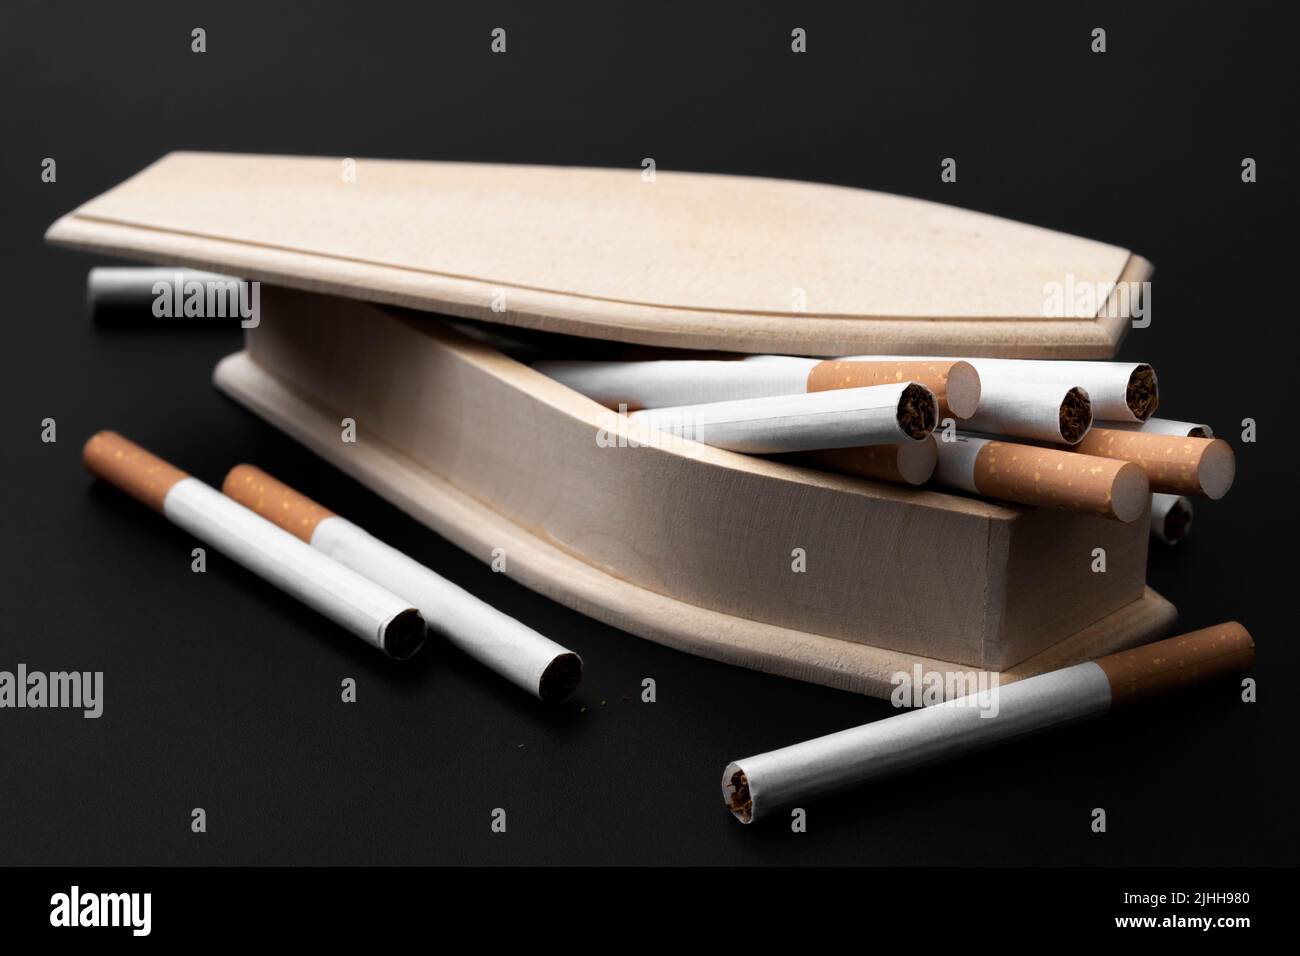 Moody imagen de ataúd de madera real lleno de cigarrillos en oscuridad concepto para dejar de fumar para prevenir la muerte, el cáncer de pulmón y la conciencia de los cigarrillos kil Foto de stock